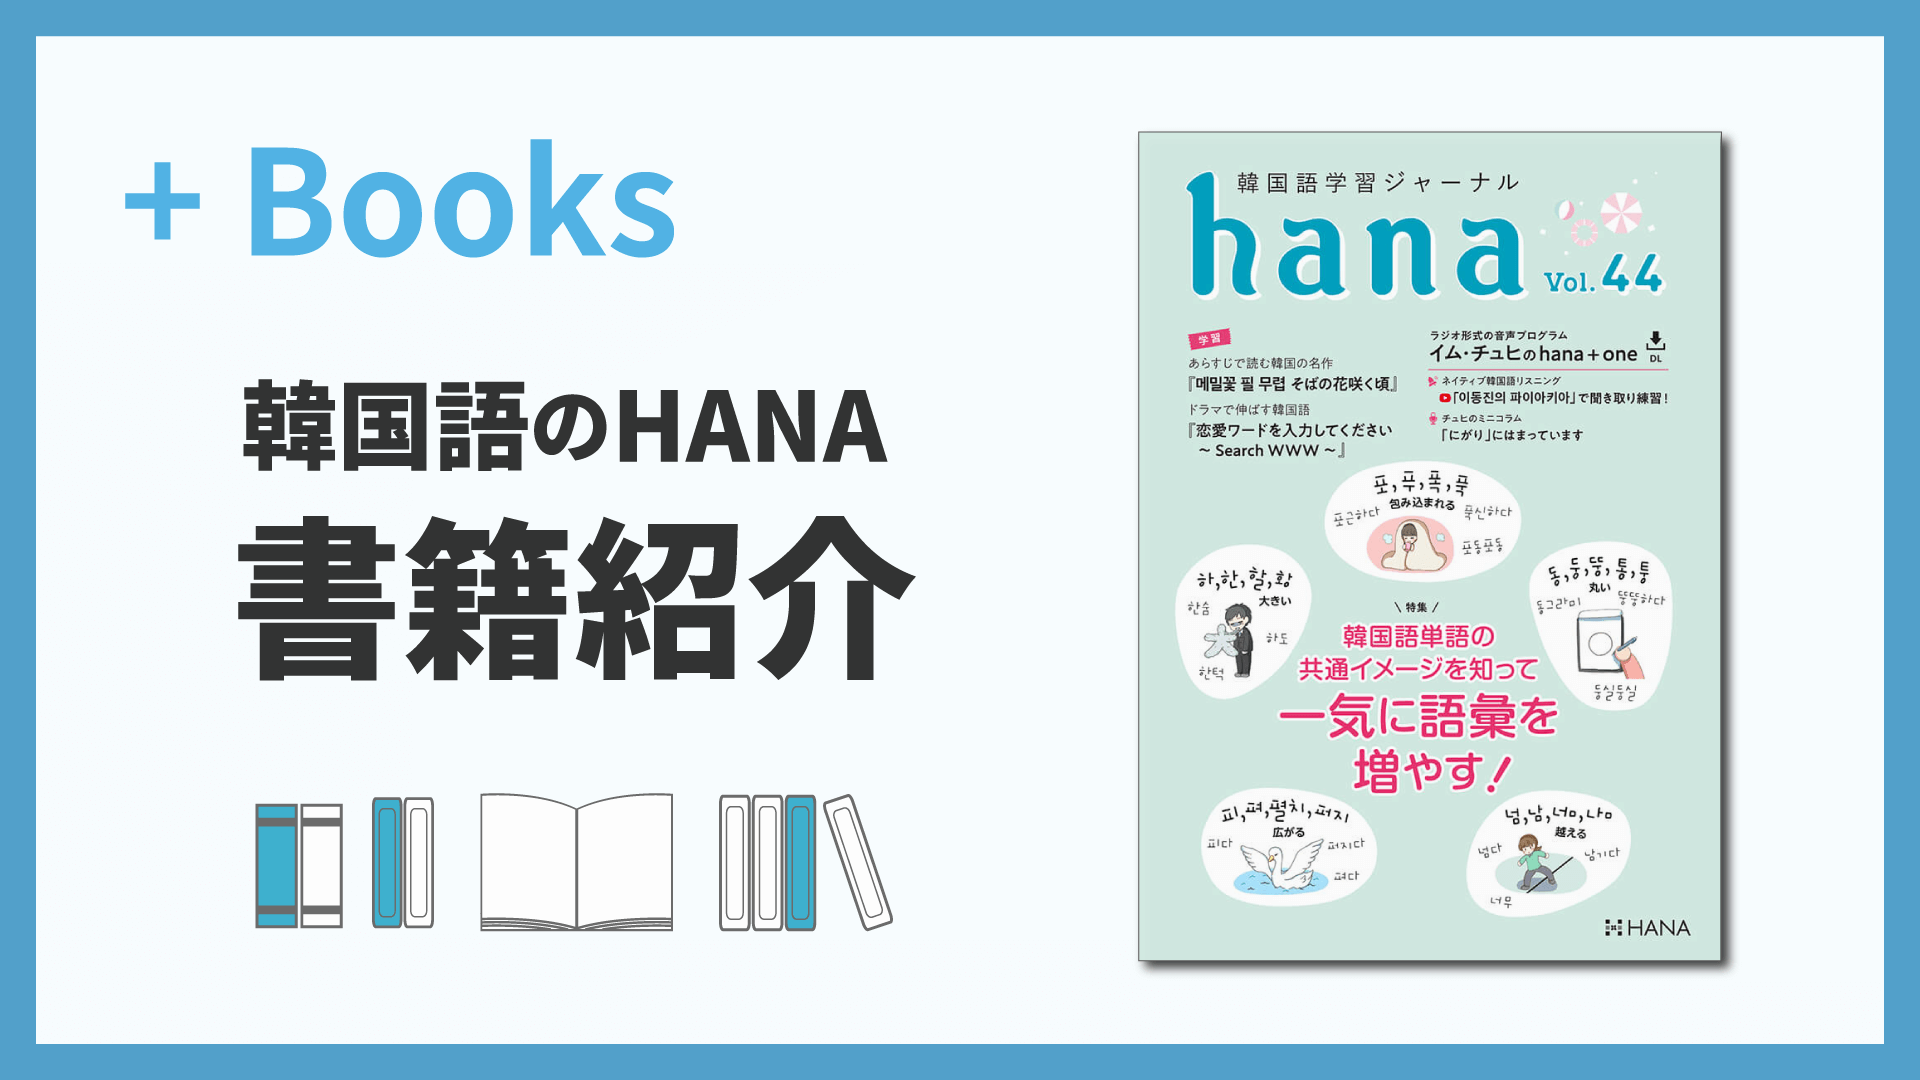 韓国語学習ジャーナルhana Vol. 44「韓国語単語の共通イメージを知って